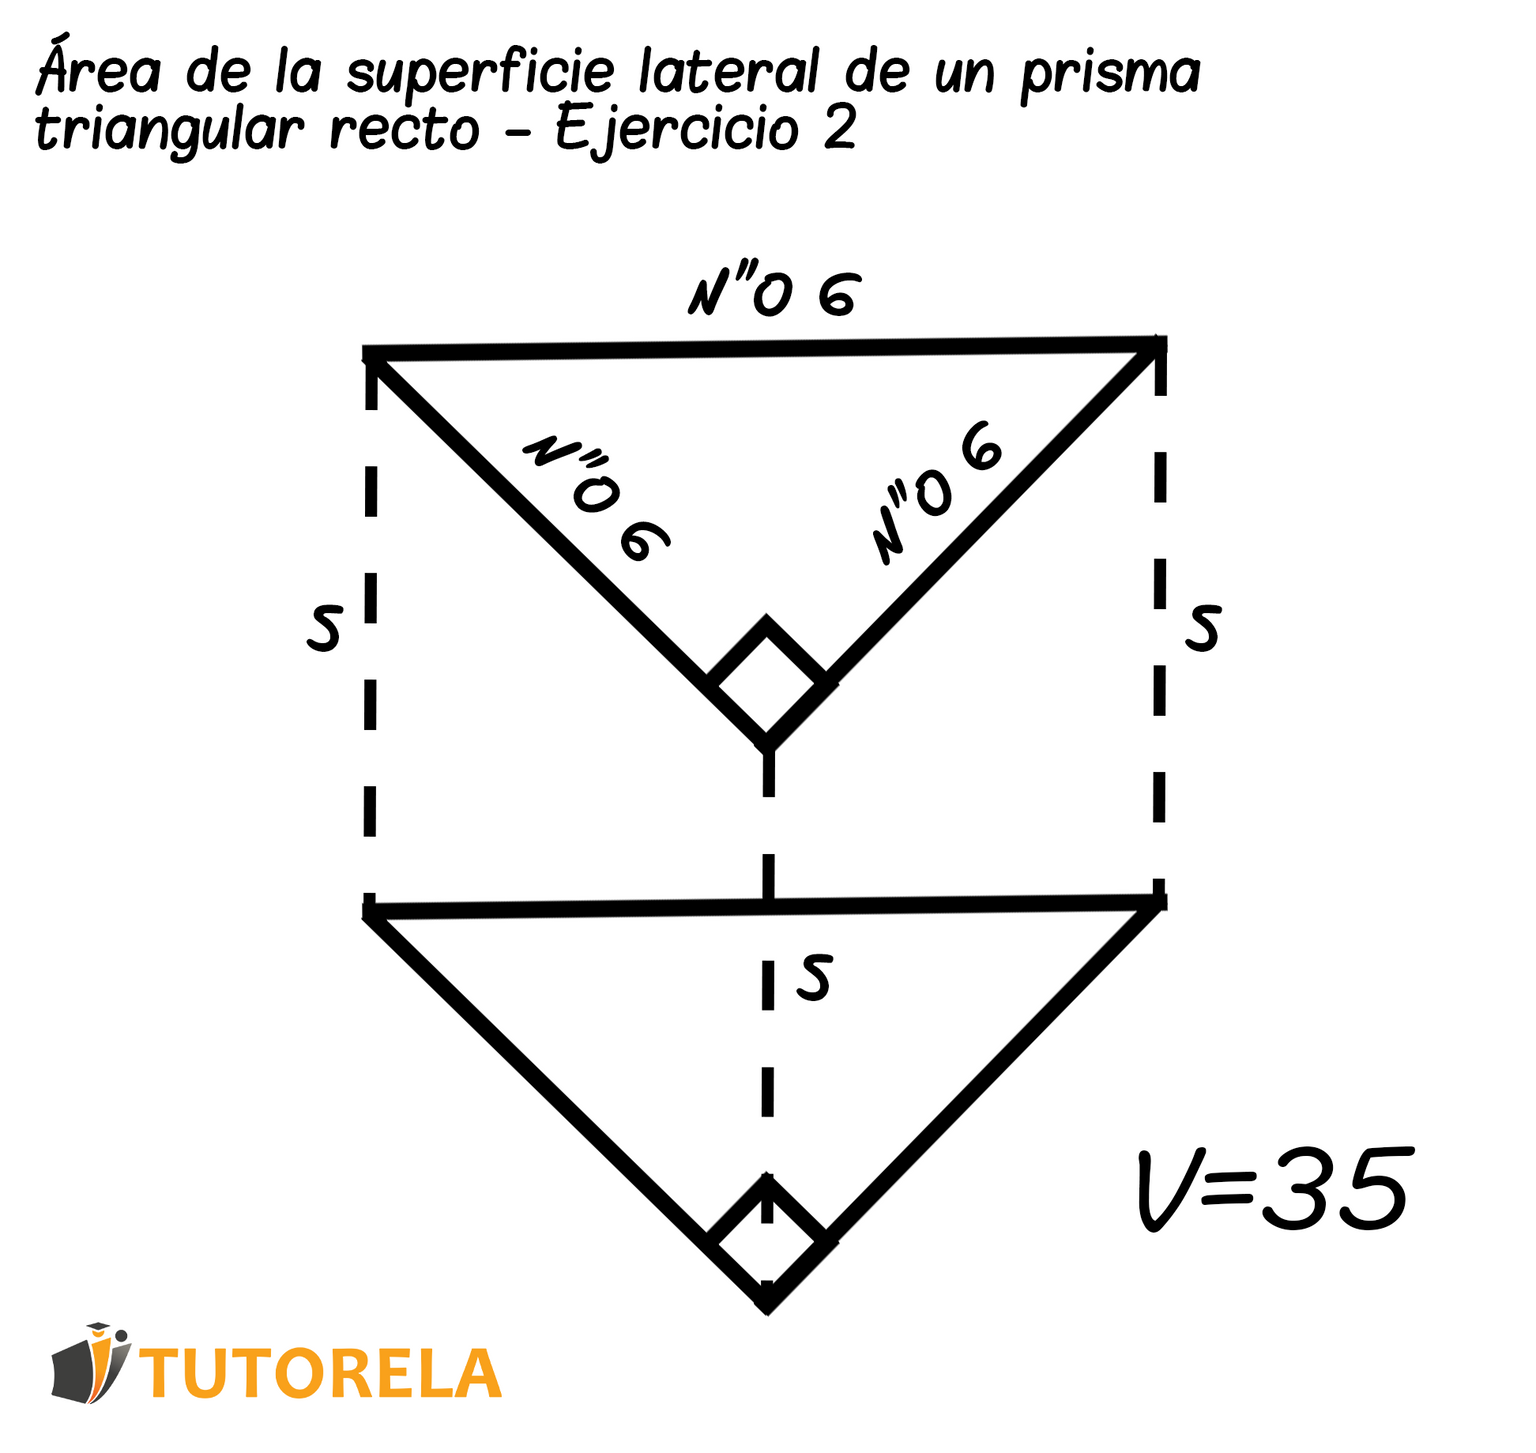 Un prisma triangular recto - Ejercicio 02